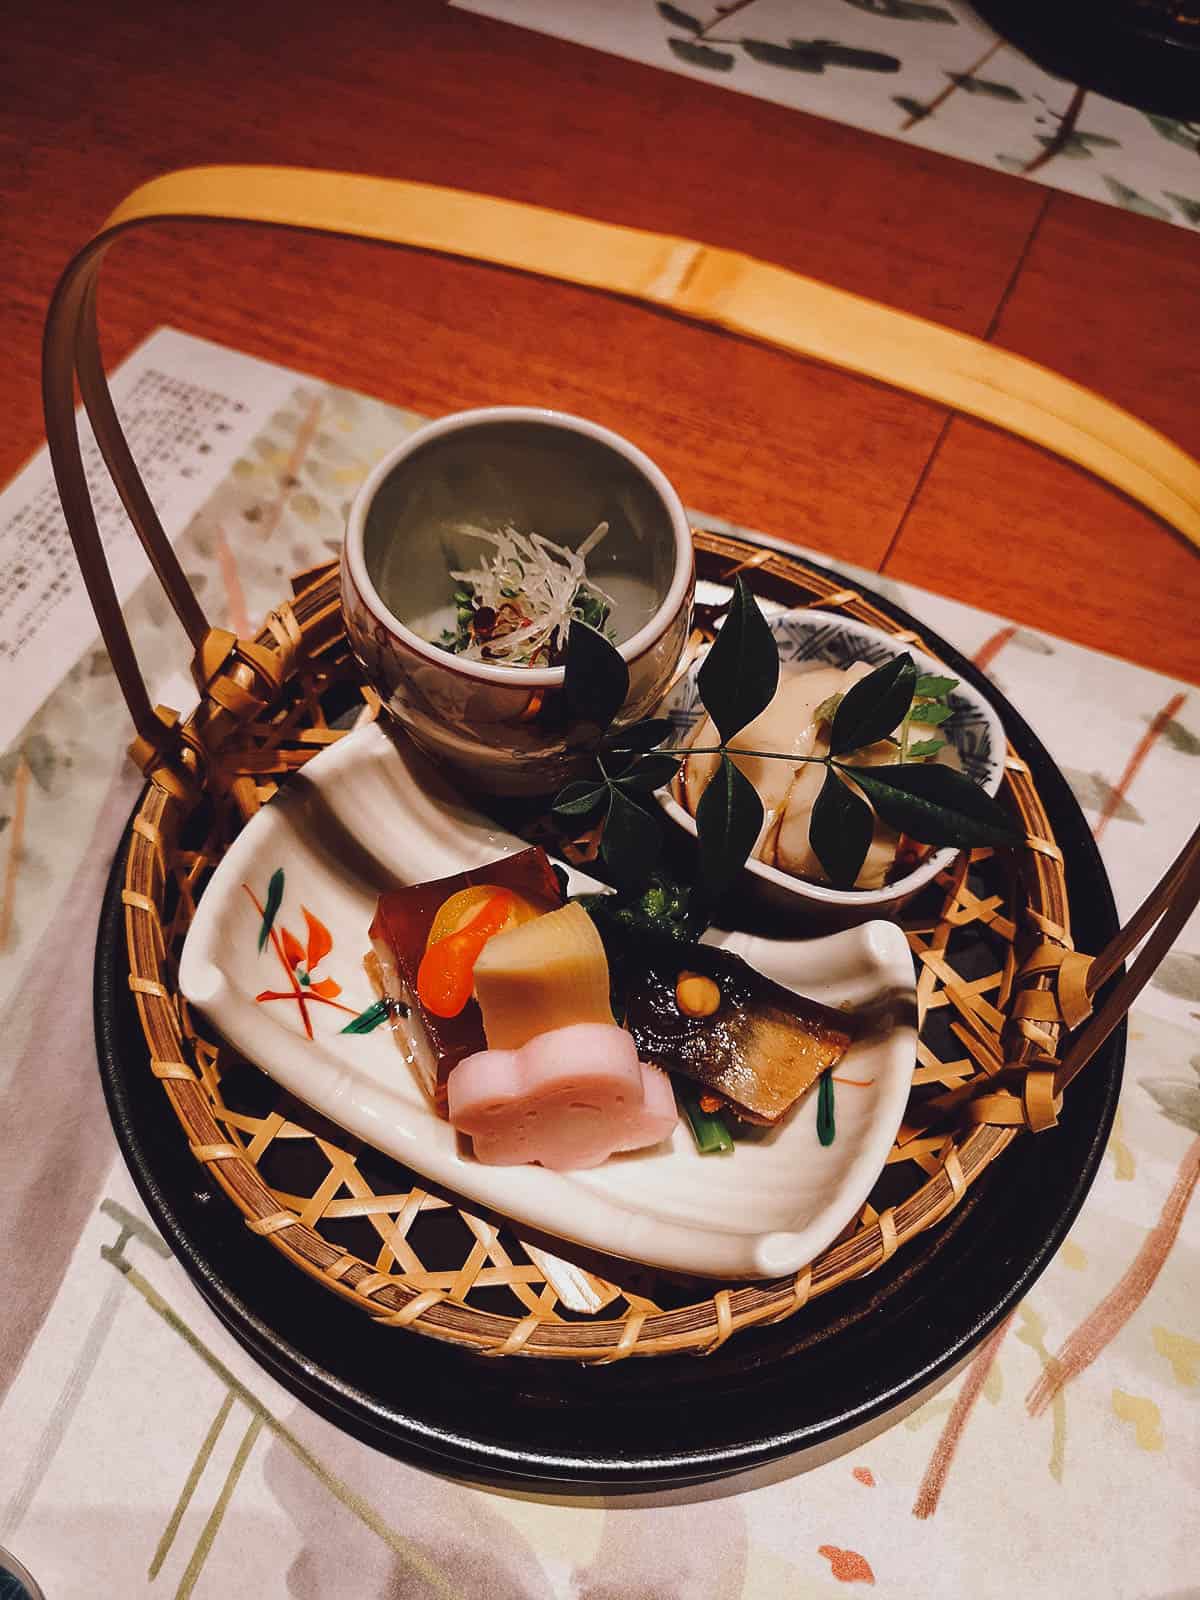 Dish from kaiseki course at a restaurant in Kanazawa